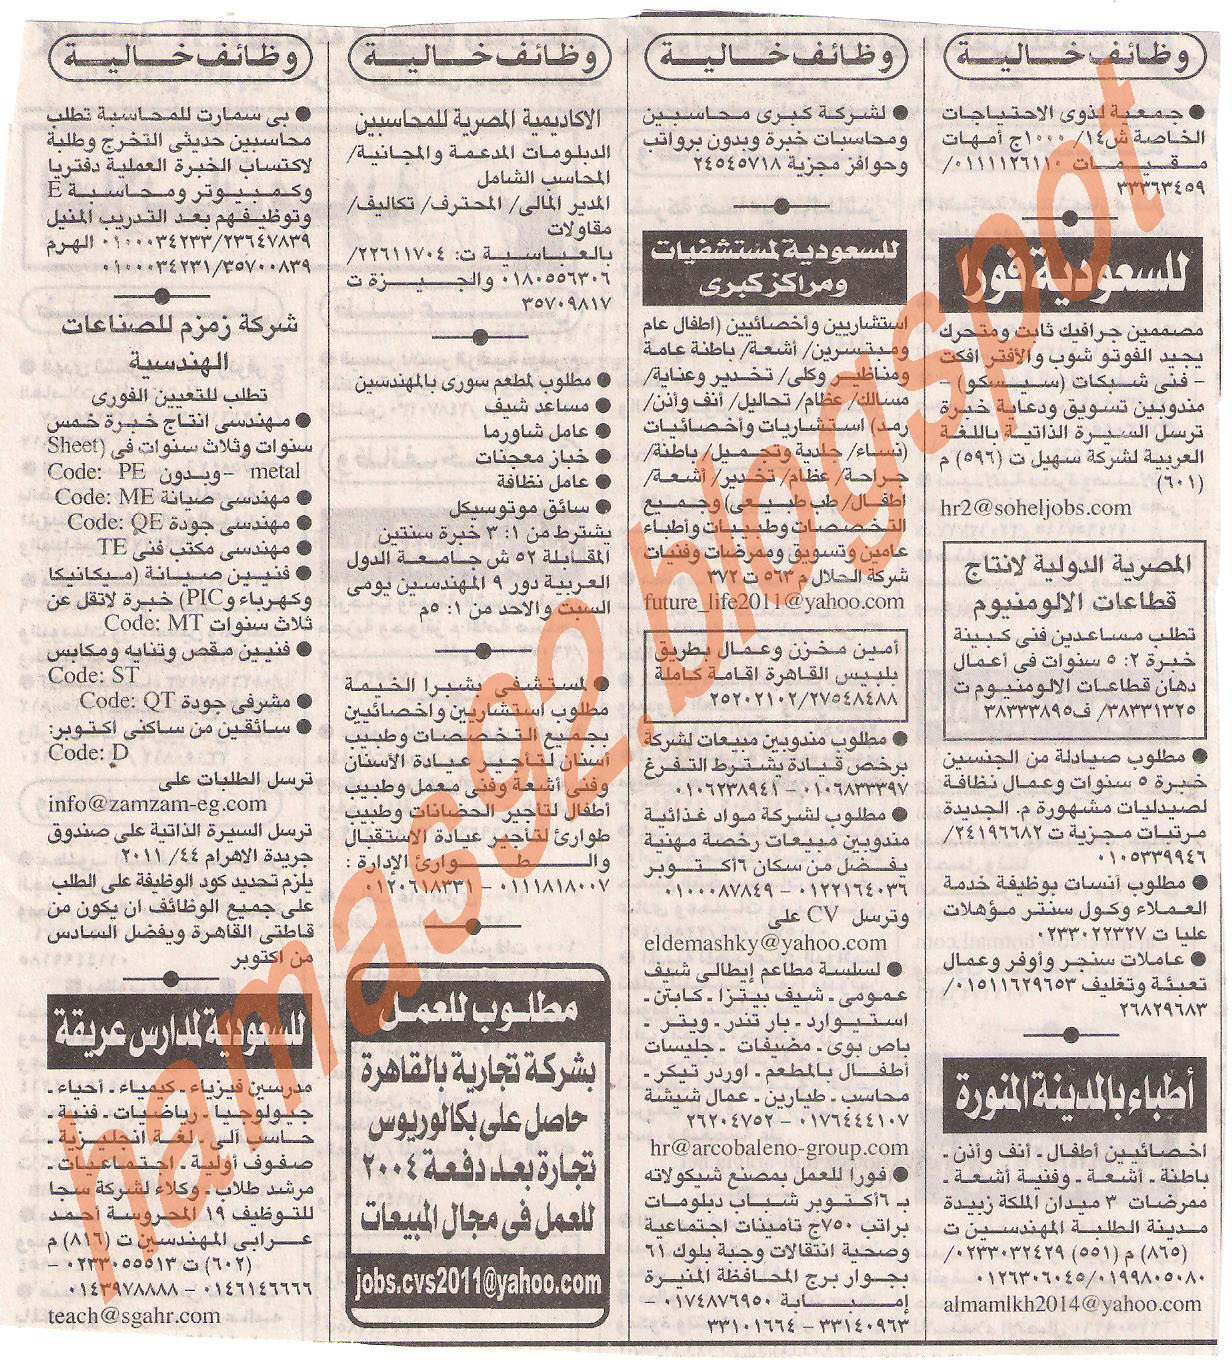 وظائف جريدة الاهرام الجمعة 1 يوليو 2011 - الجزء الثانى Picture+003